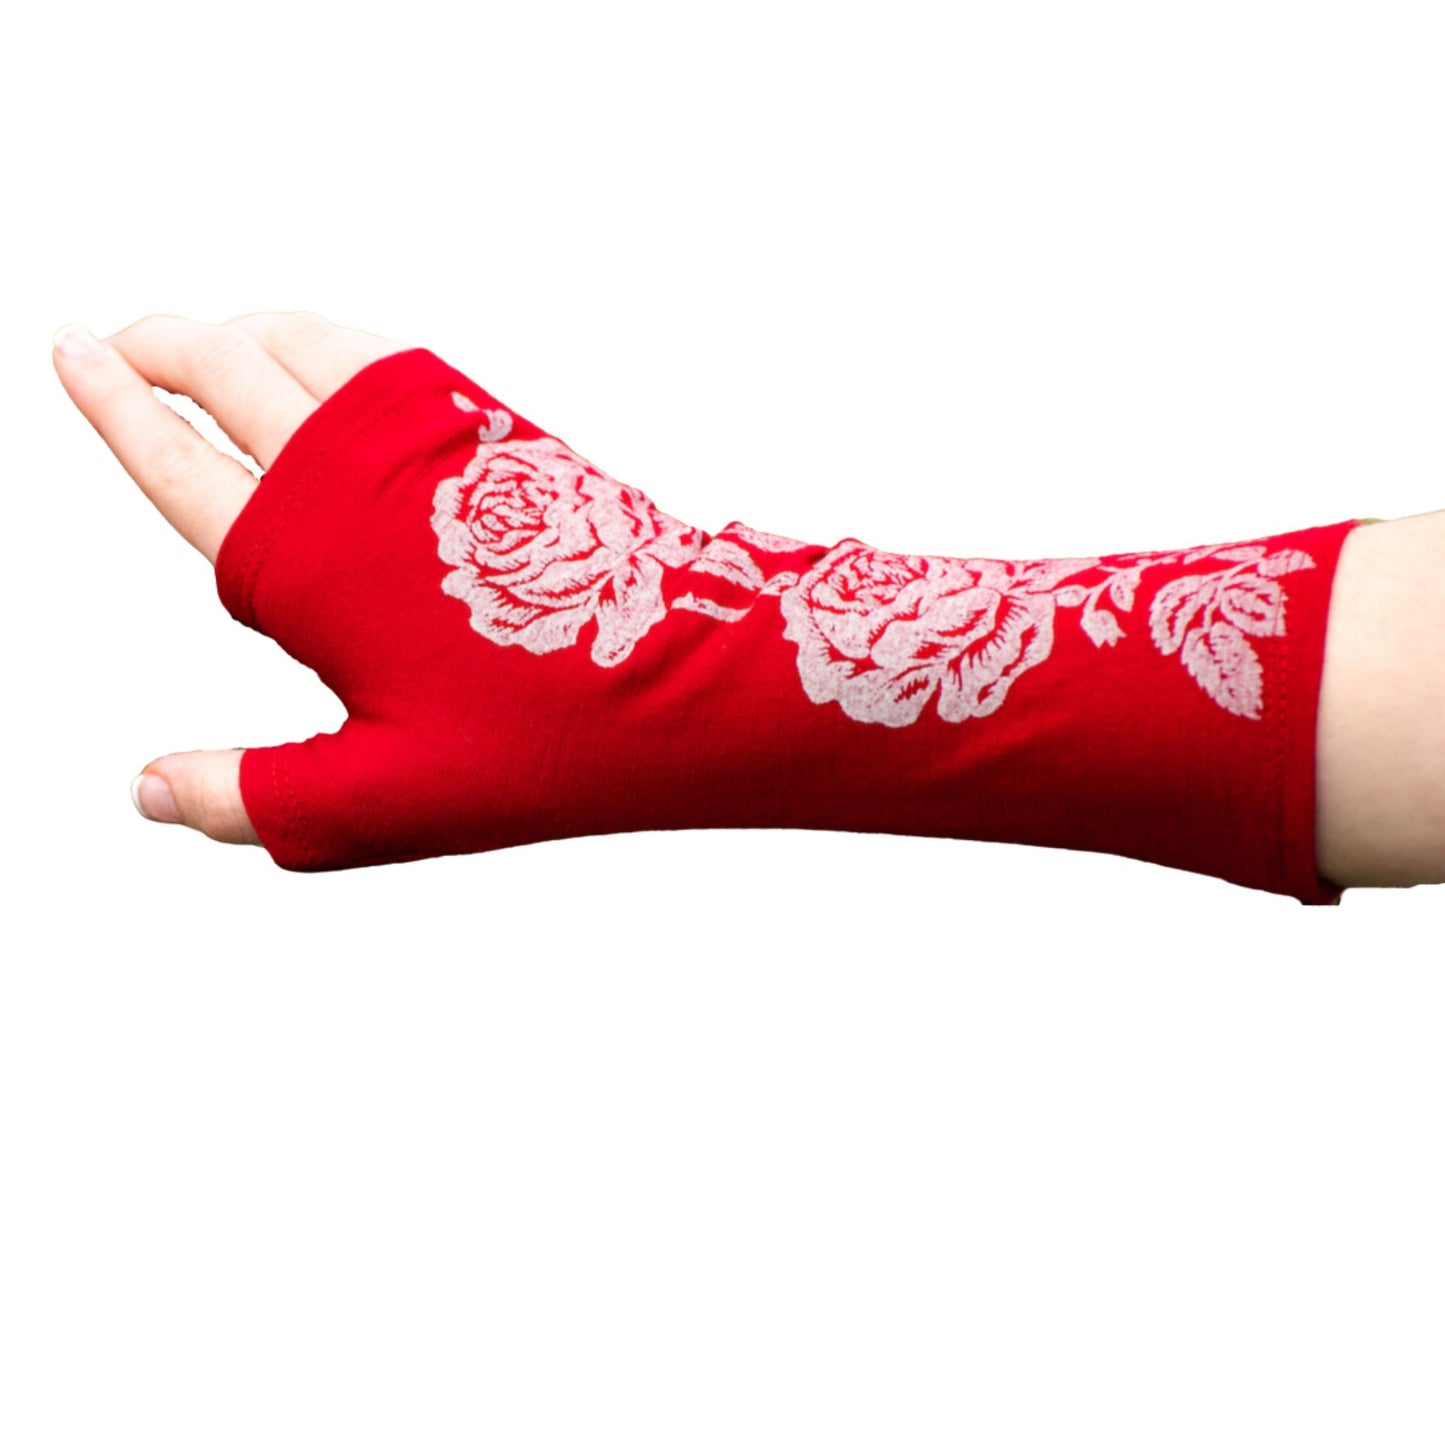 Fingerless merino gloves in red with white rose print.